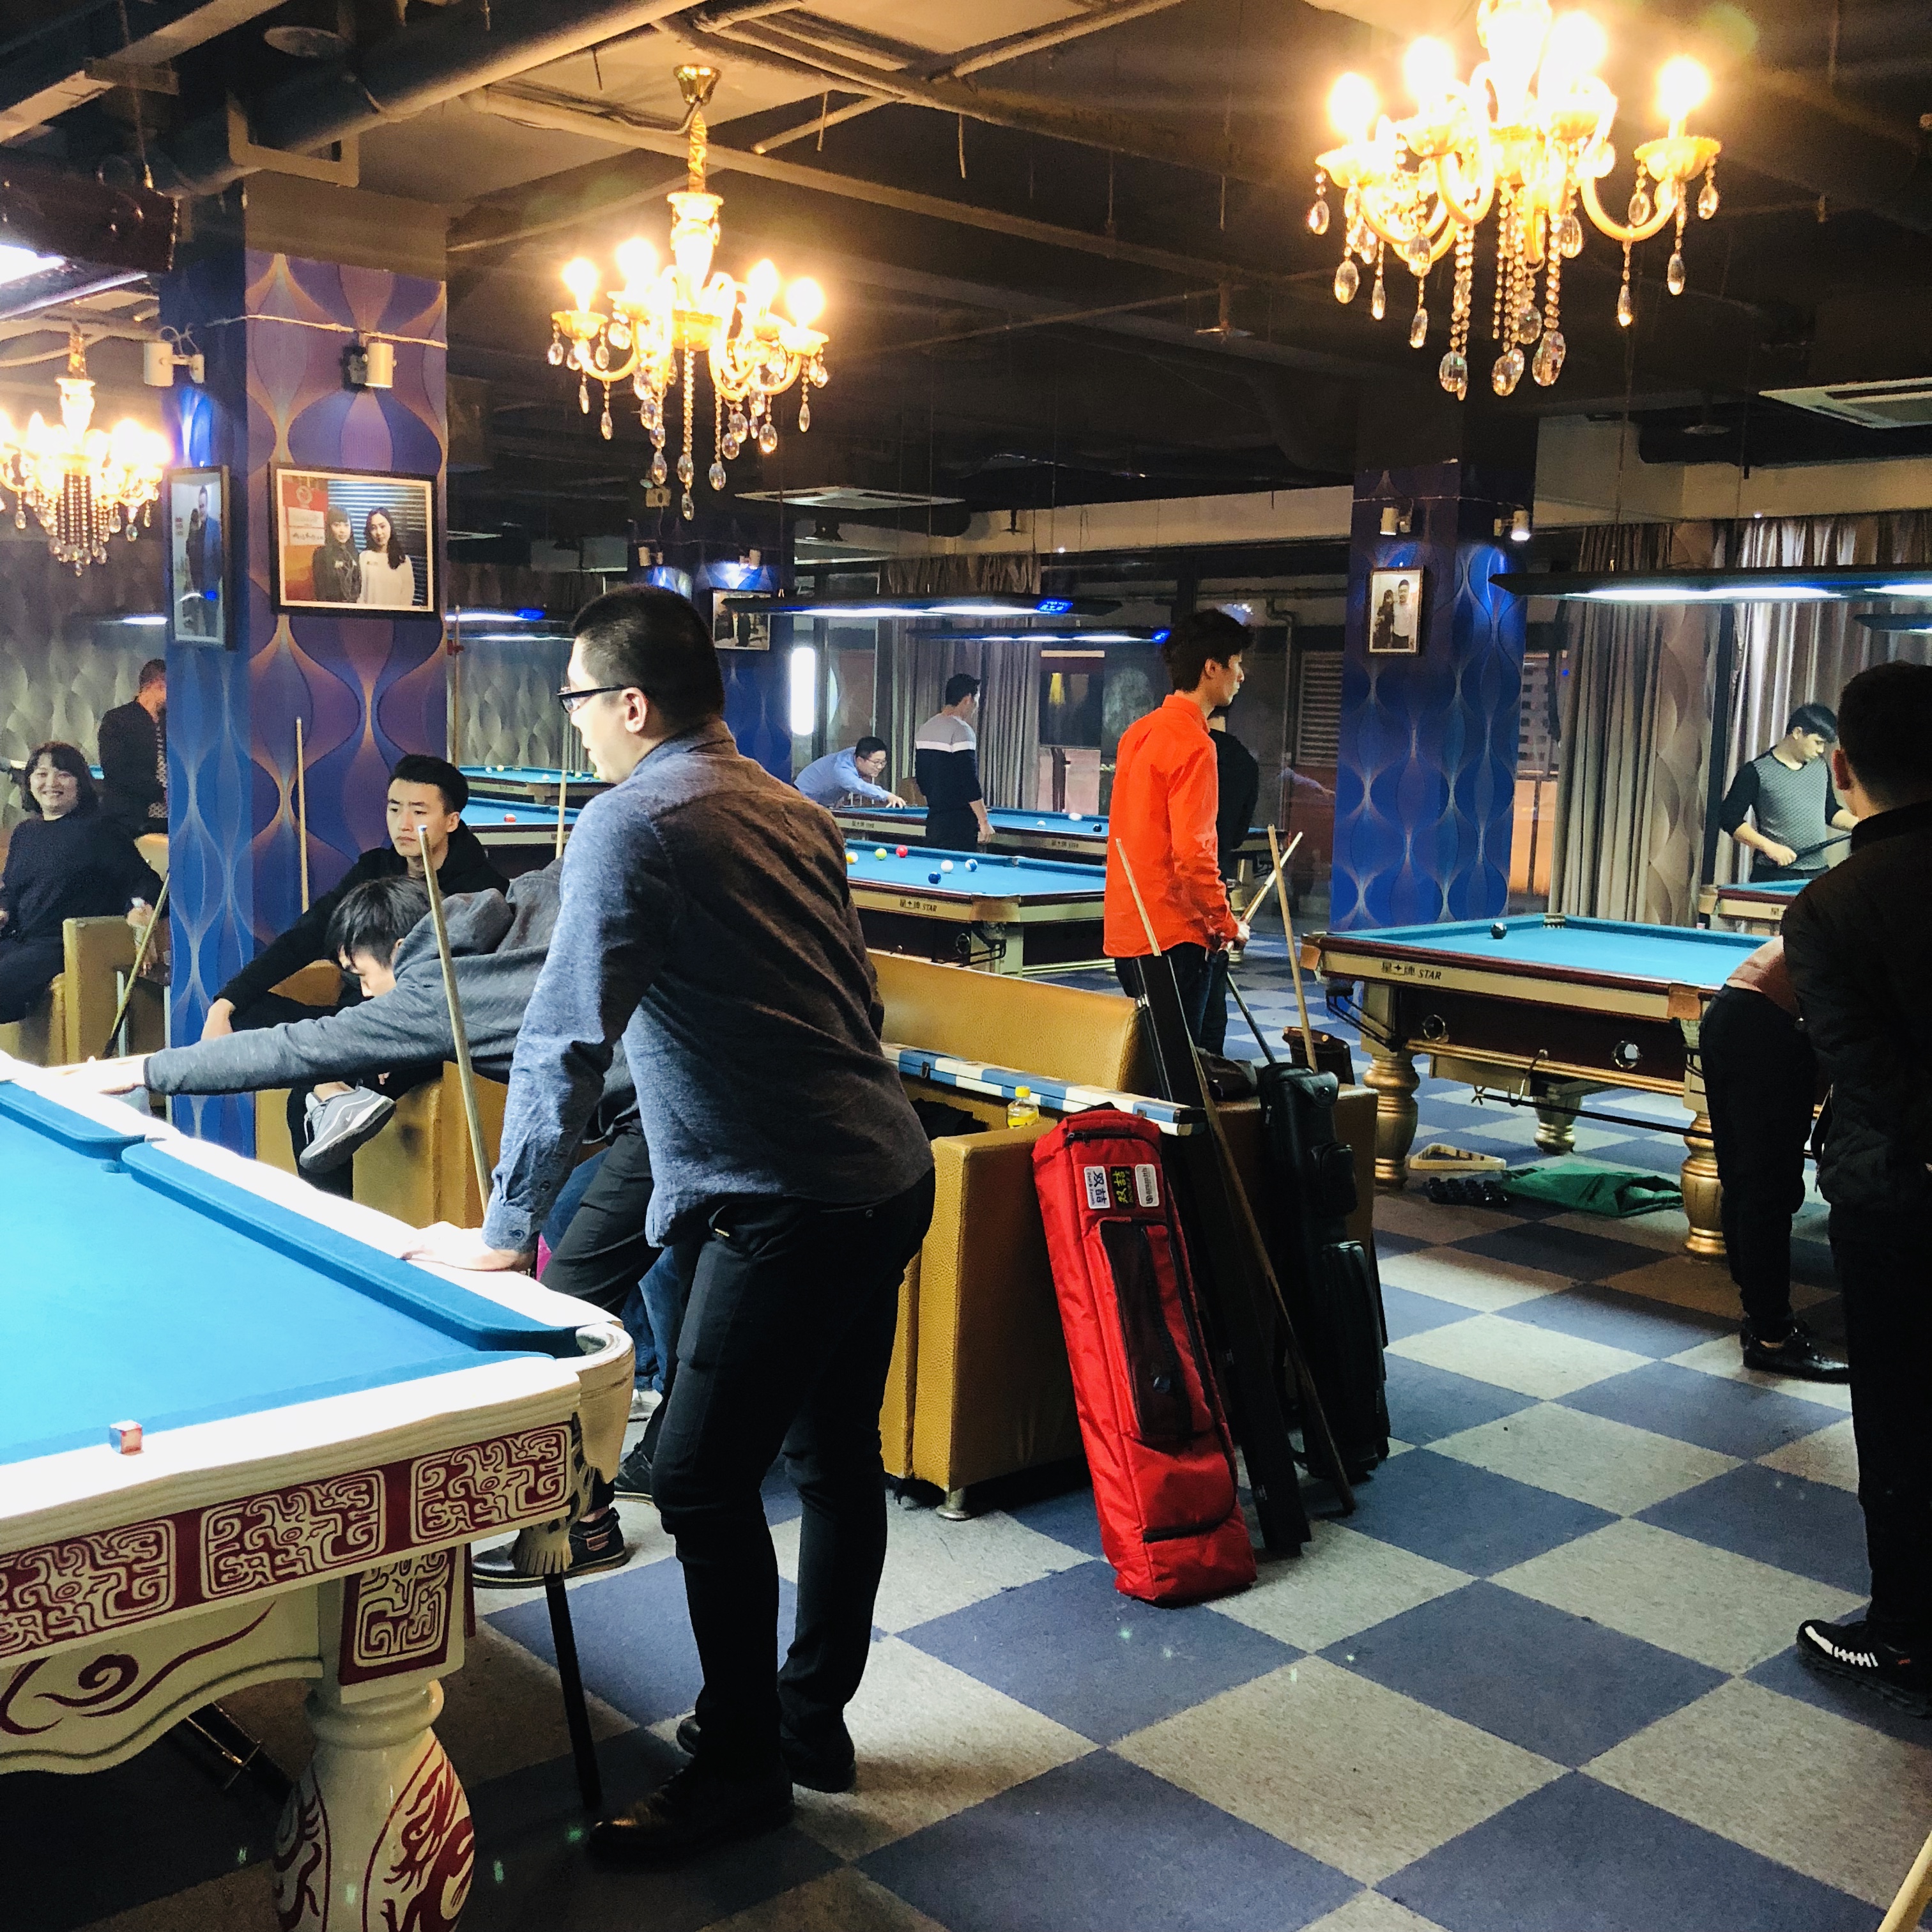 【Star Alliance】Nanjing Zhonghua Road Night Fashion Billiards Club_Xingpai League Ball Room